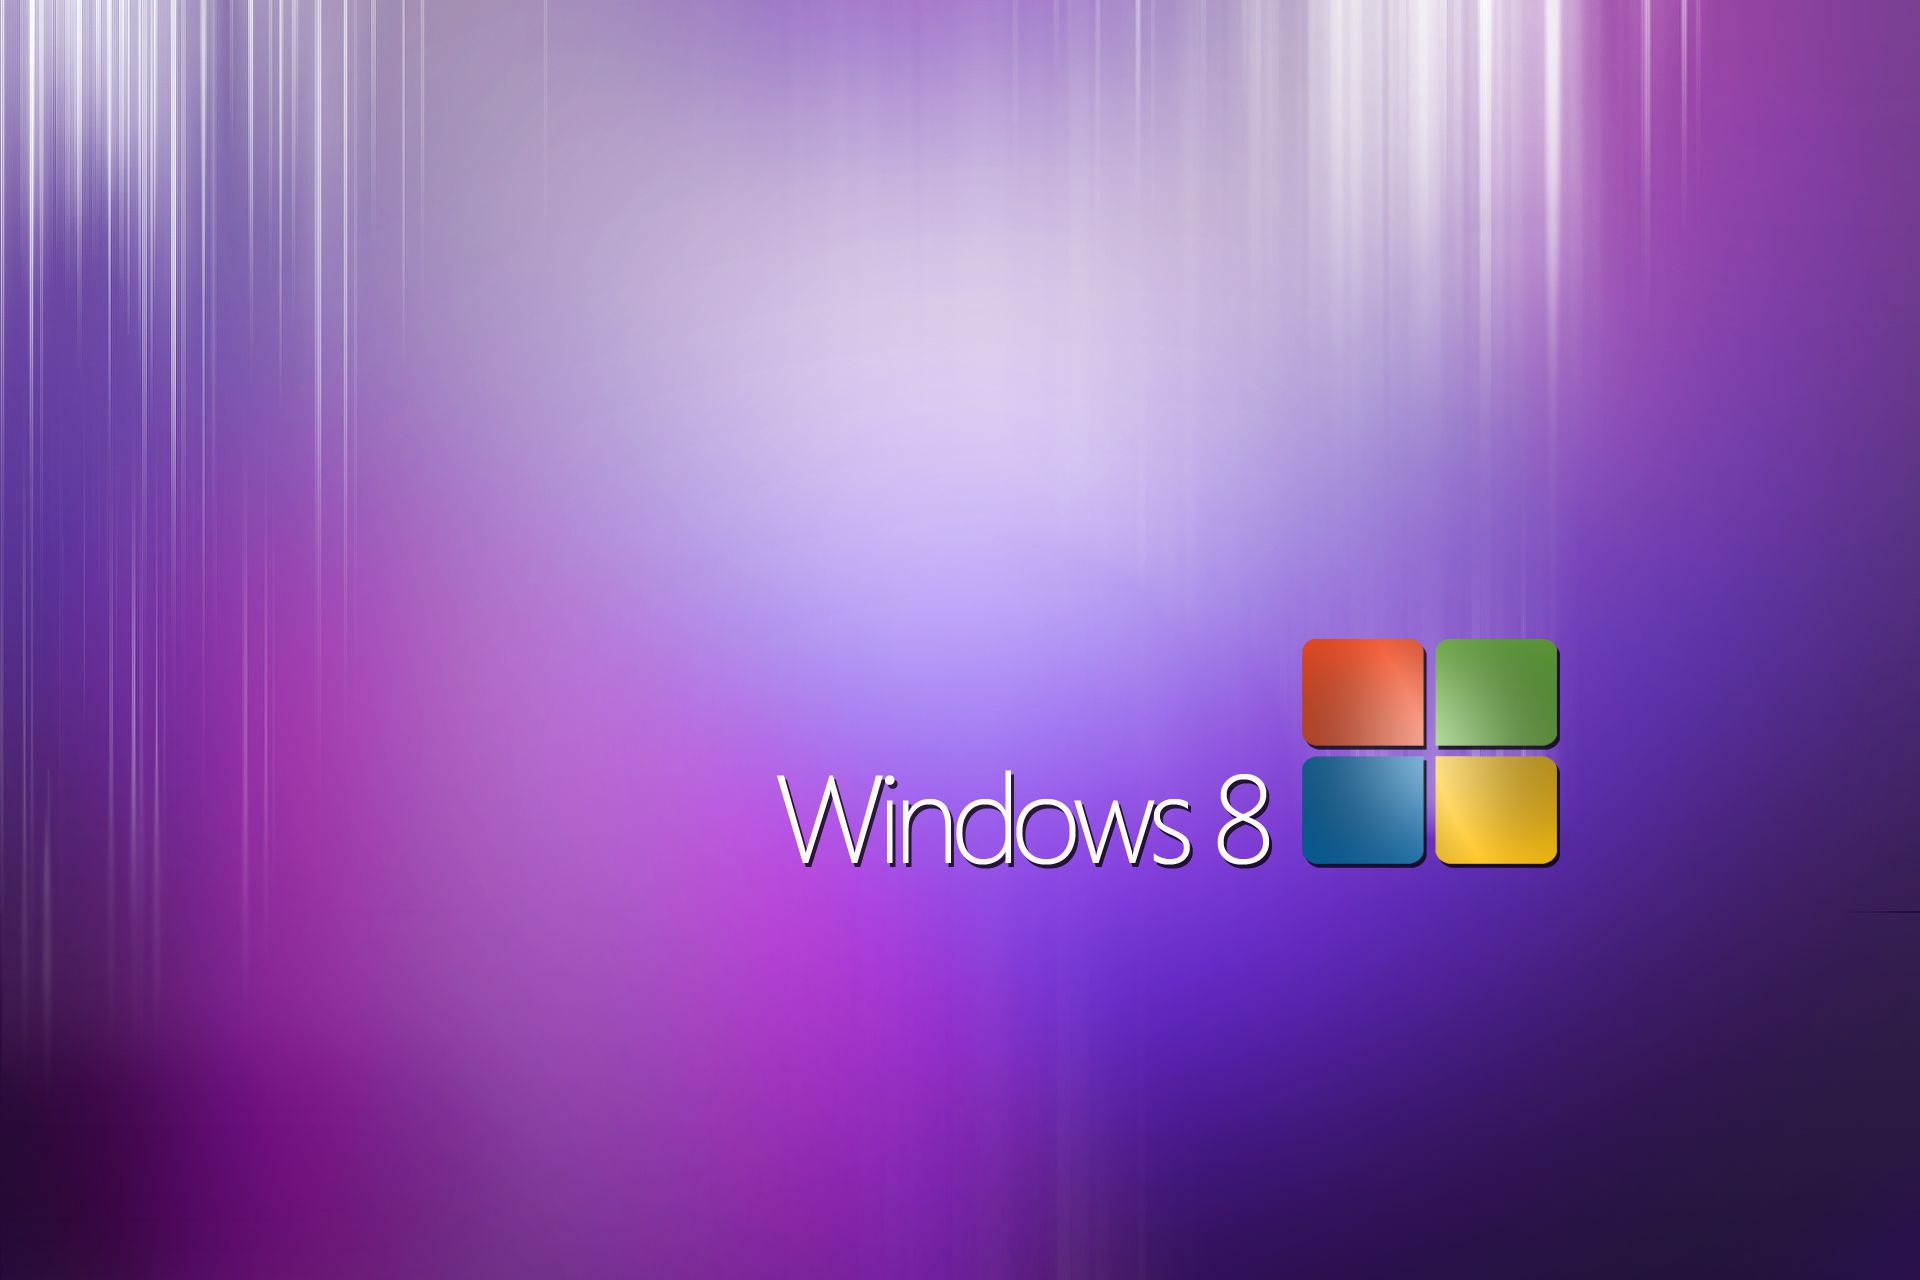 Обои для 8 1. Рабочий стол Windows. Обои Windows 8. Фон Windows 8. Фон рабочего стола Windows 8.1.